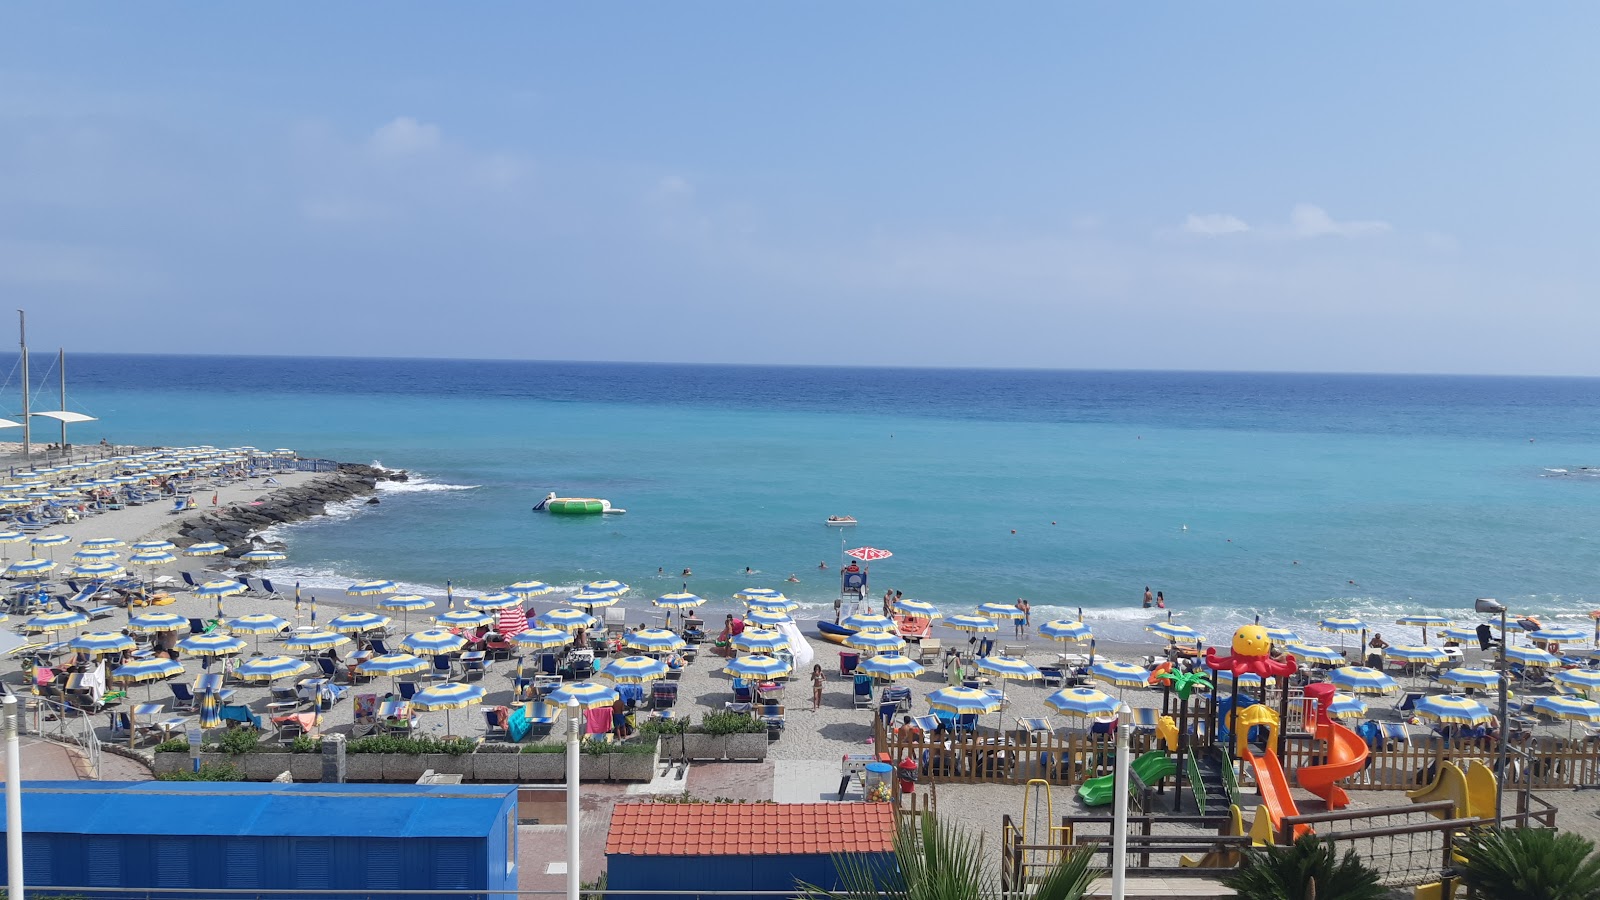 Spiaggia di Borghetto'in fotoğrafı çok temiz temizlik seviyesi ile